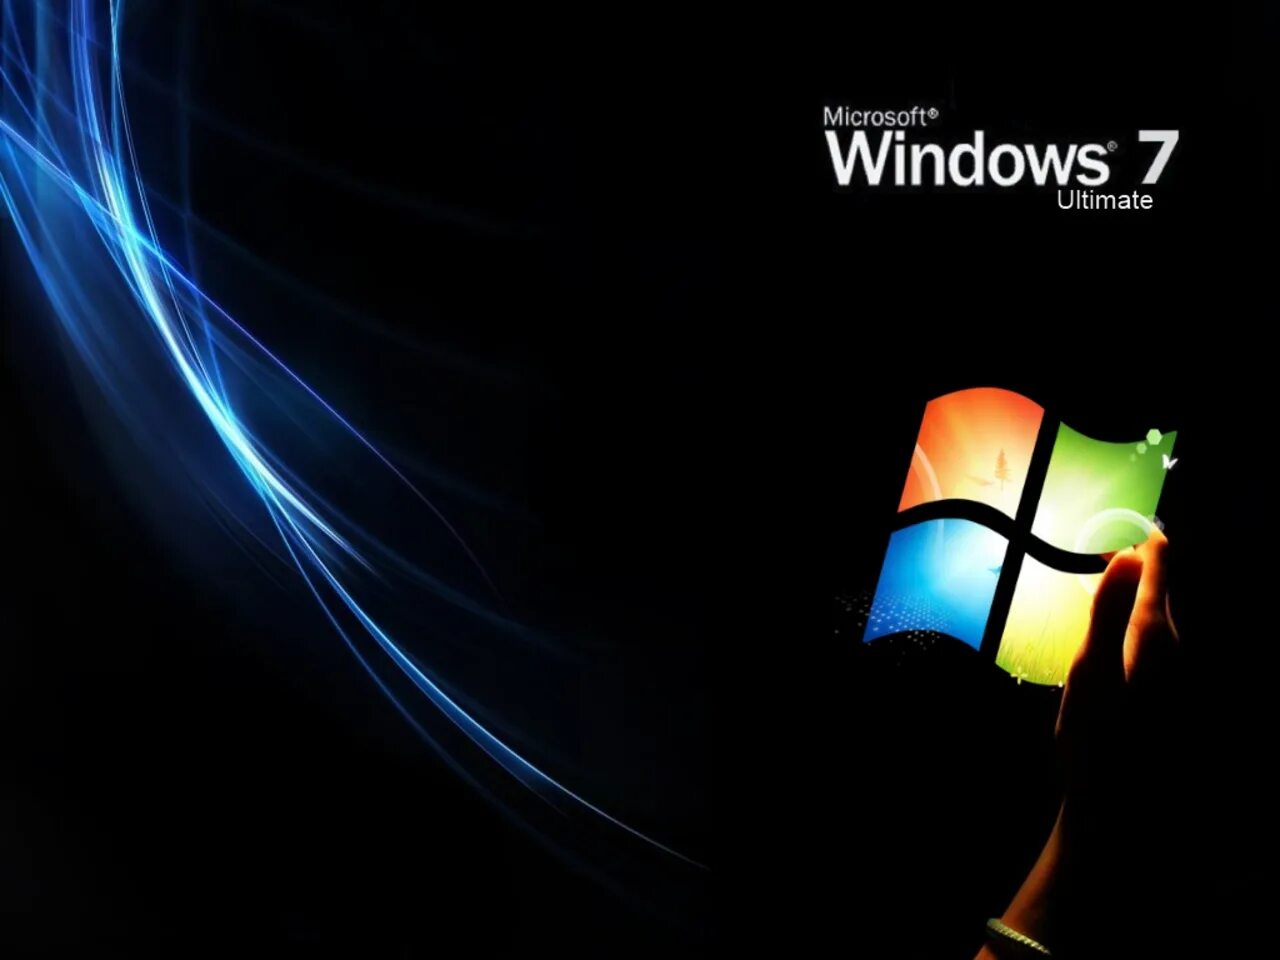 Виндовс 7. Обои Windows 7. Виндовс 7 ультиматум. Windows 7 максимальная Ultimate. Windows 7 life